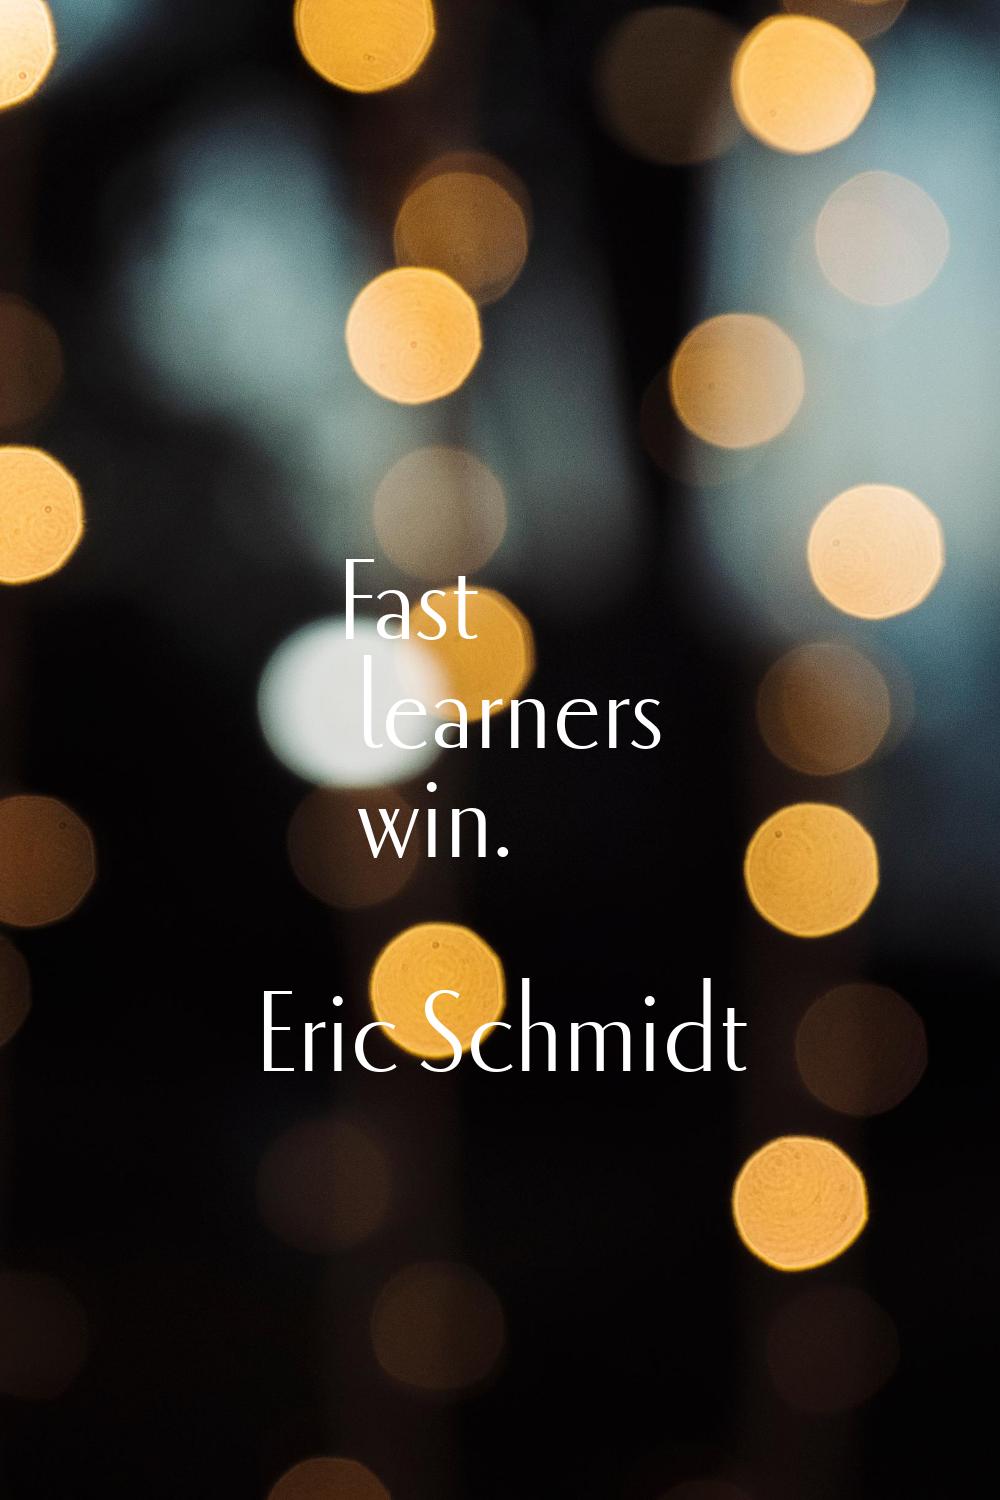 Fast learners win.